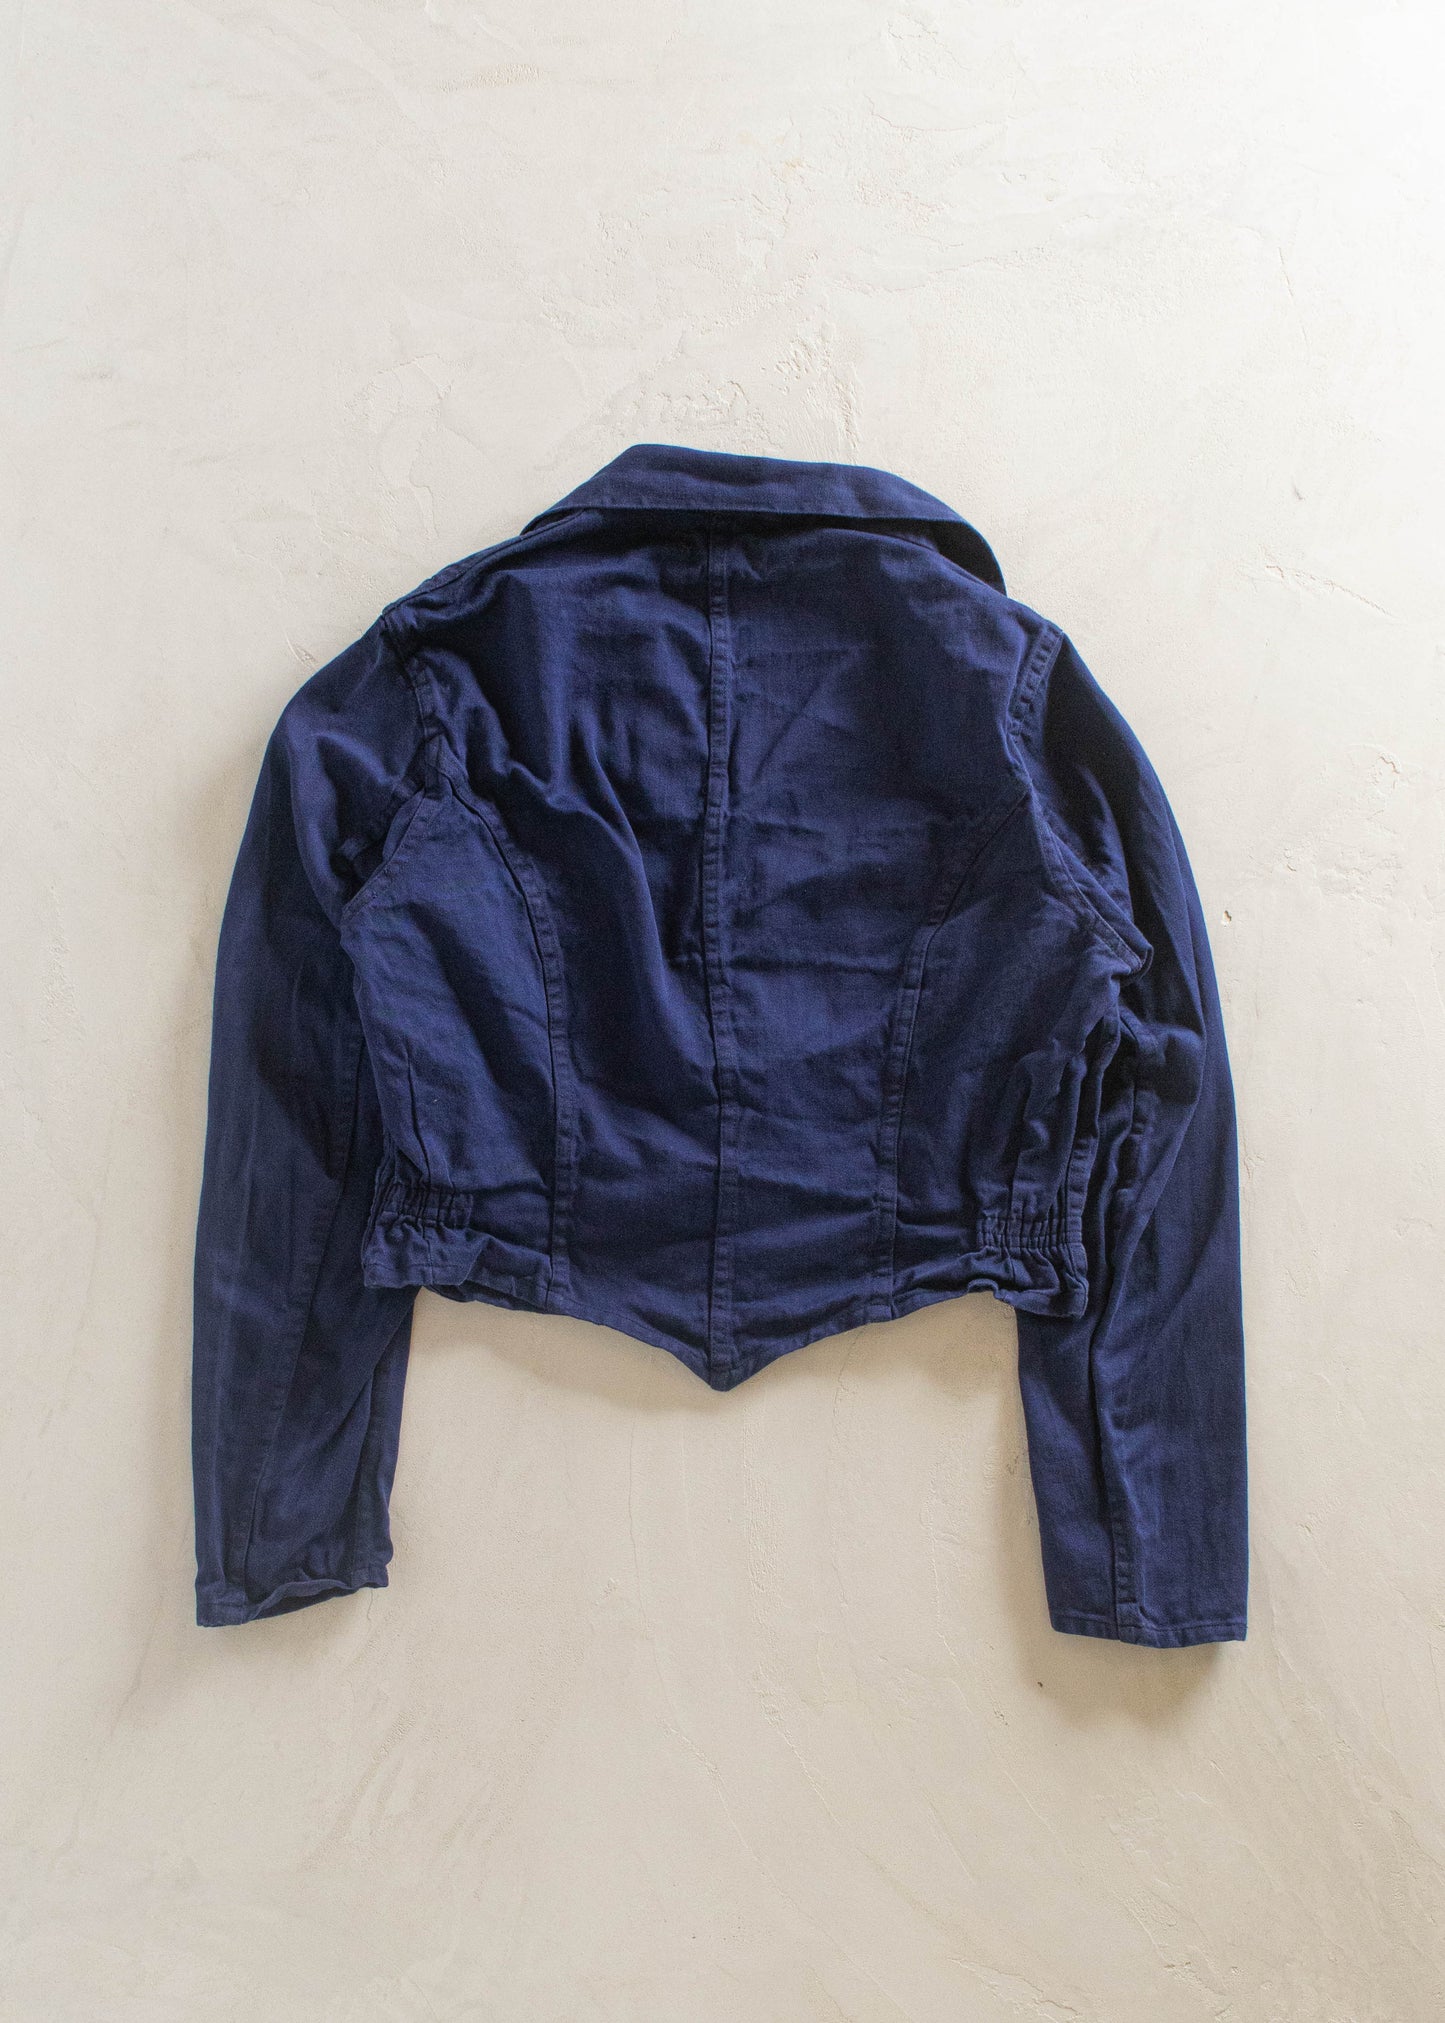 1980s Sanforized Dutch Workwear Jacket Size M/L